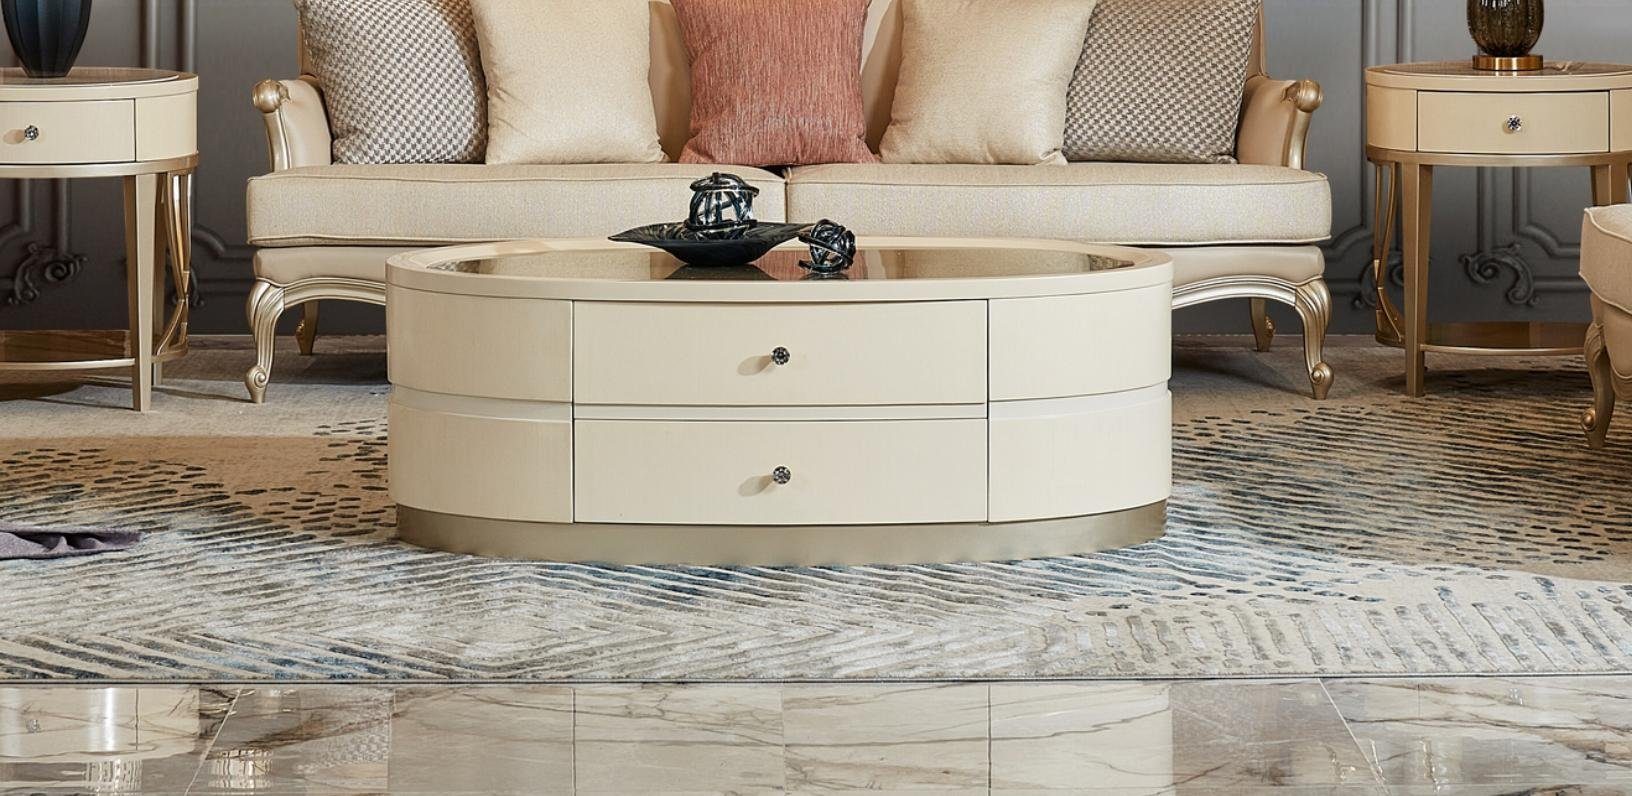 JVmoebel Couchtisch Couchtisch Tisch Oval Luxus Design Tische Beistelltische Ovale